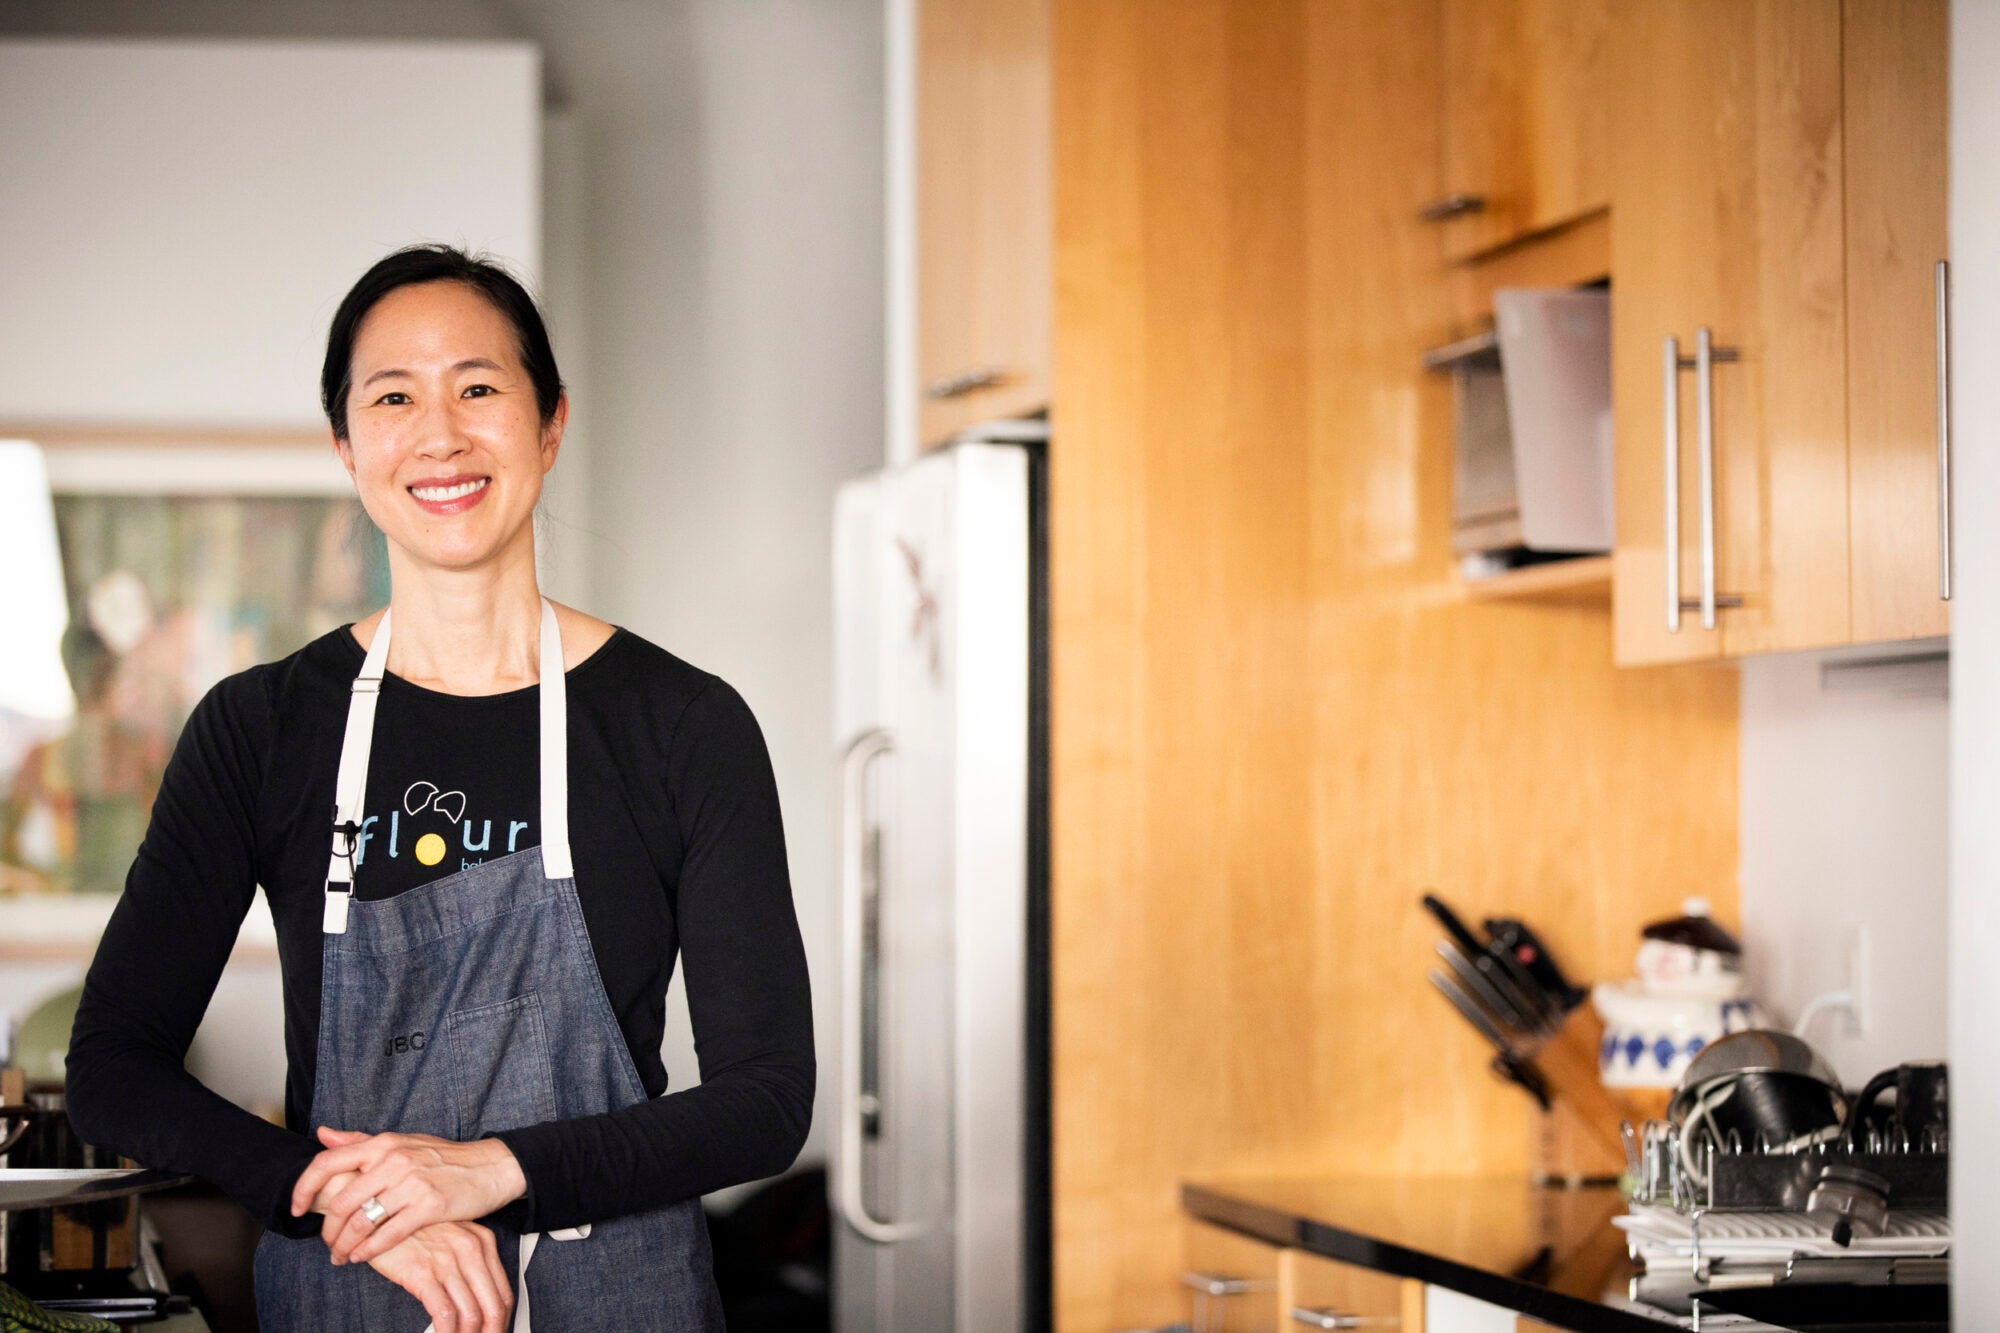 Joanne Chang wears an apron in a kitchen